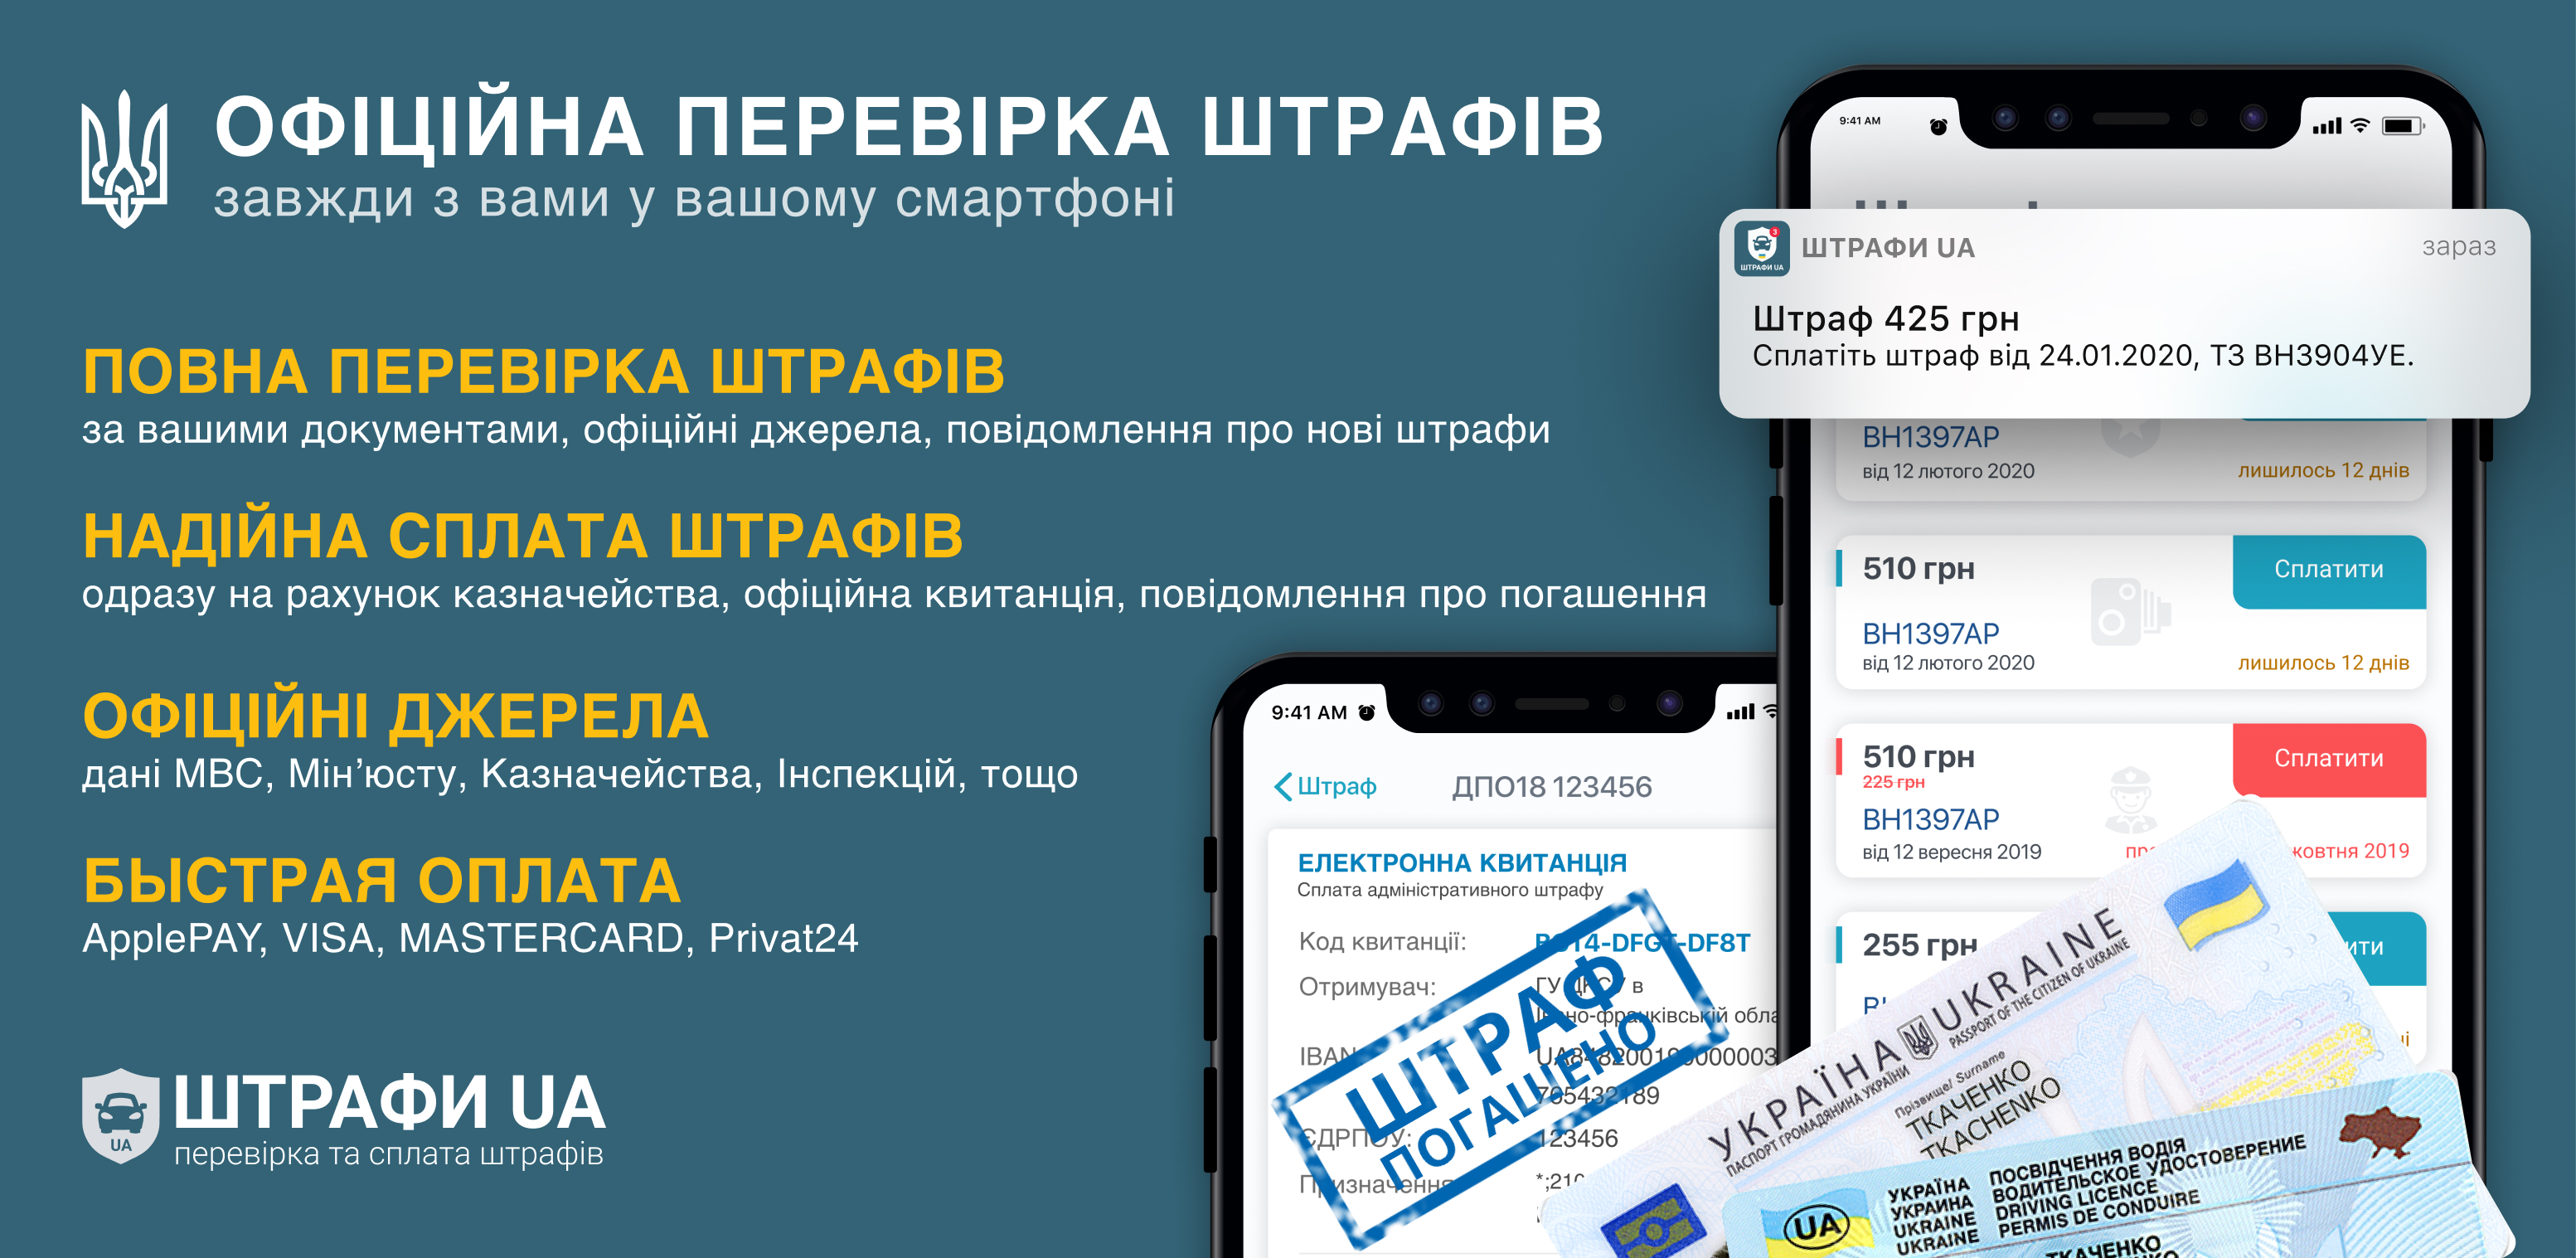 	В Украине запустили приложение для оплаты штрафов за нарушение ПДД